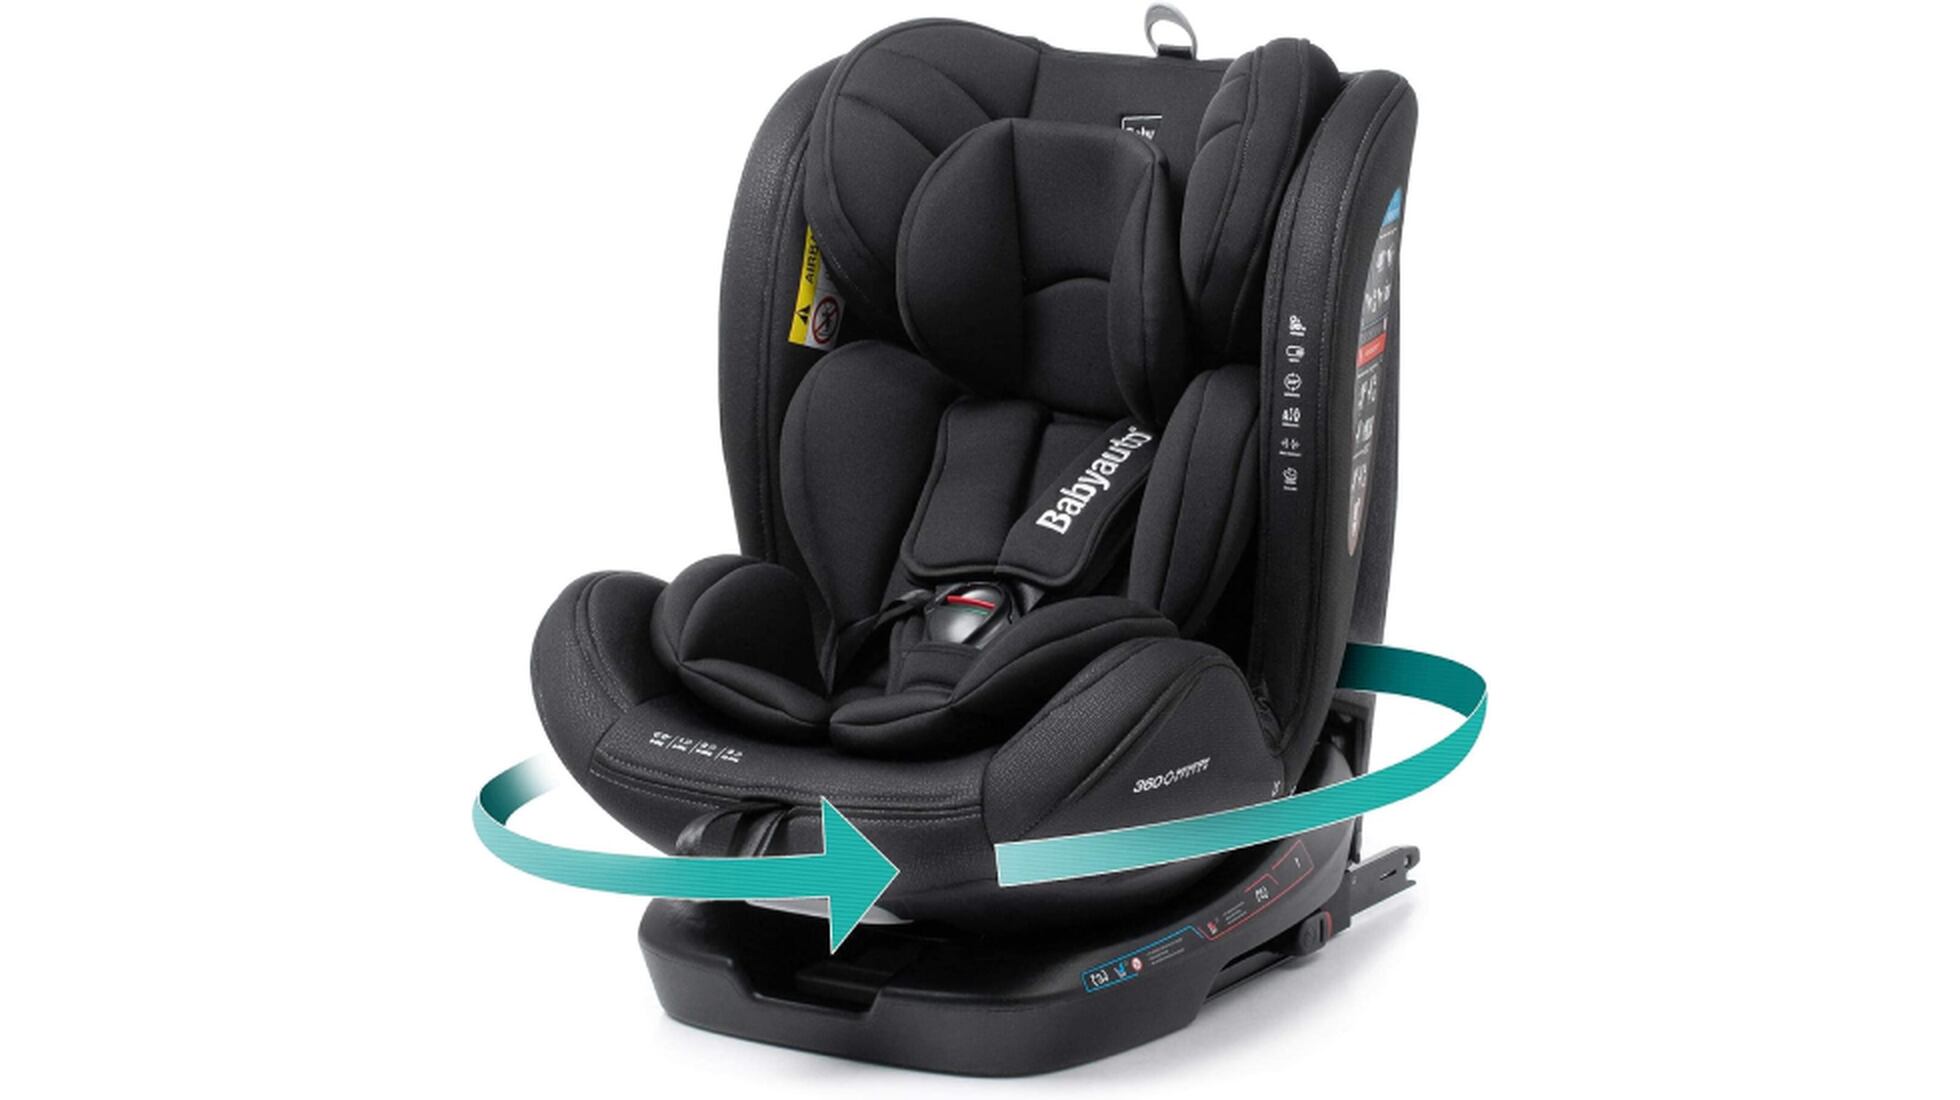 Mejor silla de coche para bebé 2020: ¿cuál compro? Tipos y comparativa